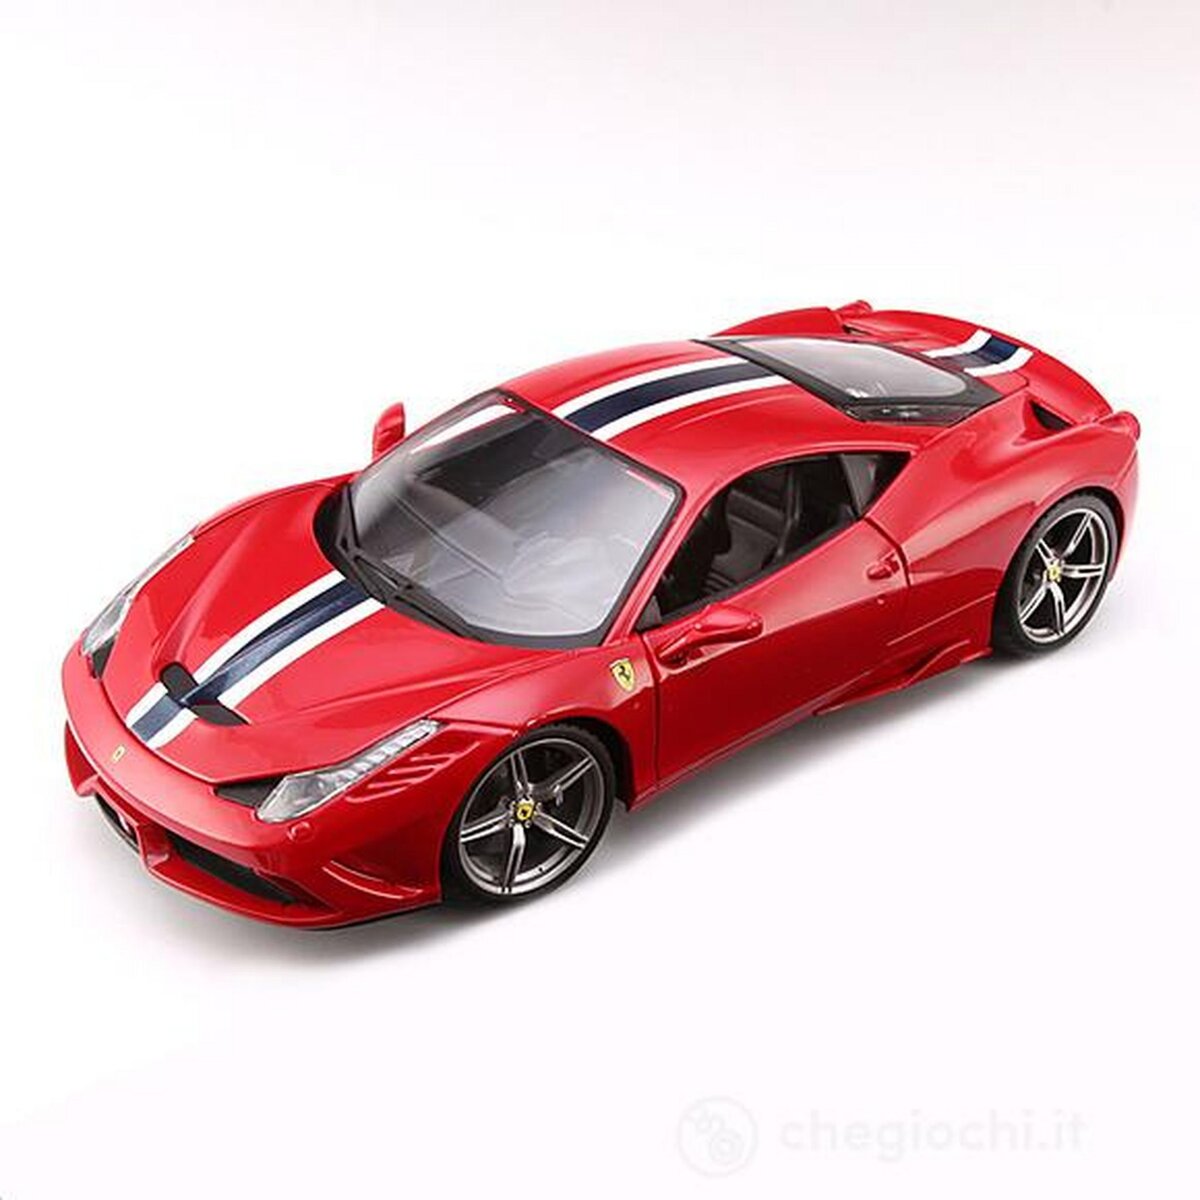 BURAGO Voiture Bburago Ferrari à l’échelle 1/18ème Rouge pas cher 